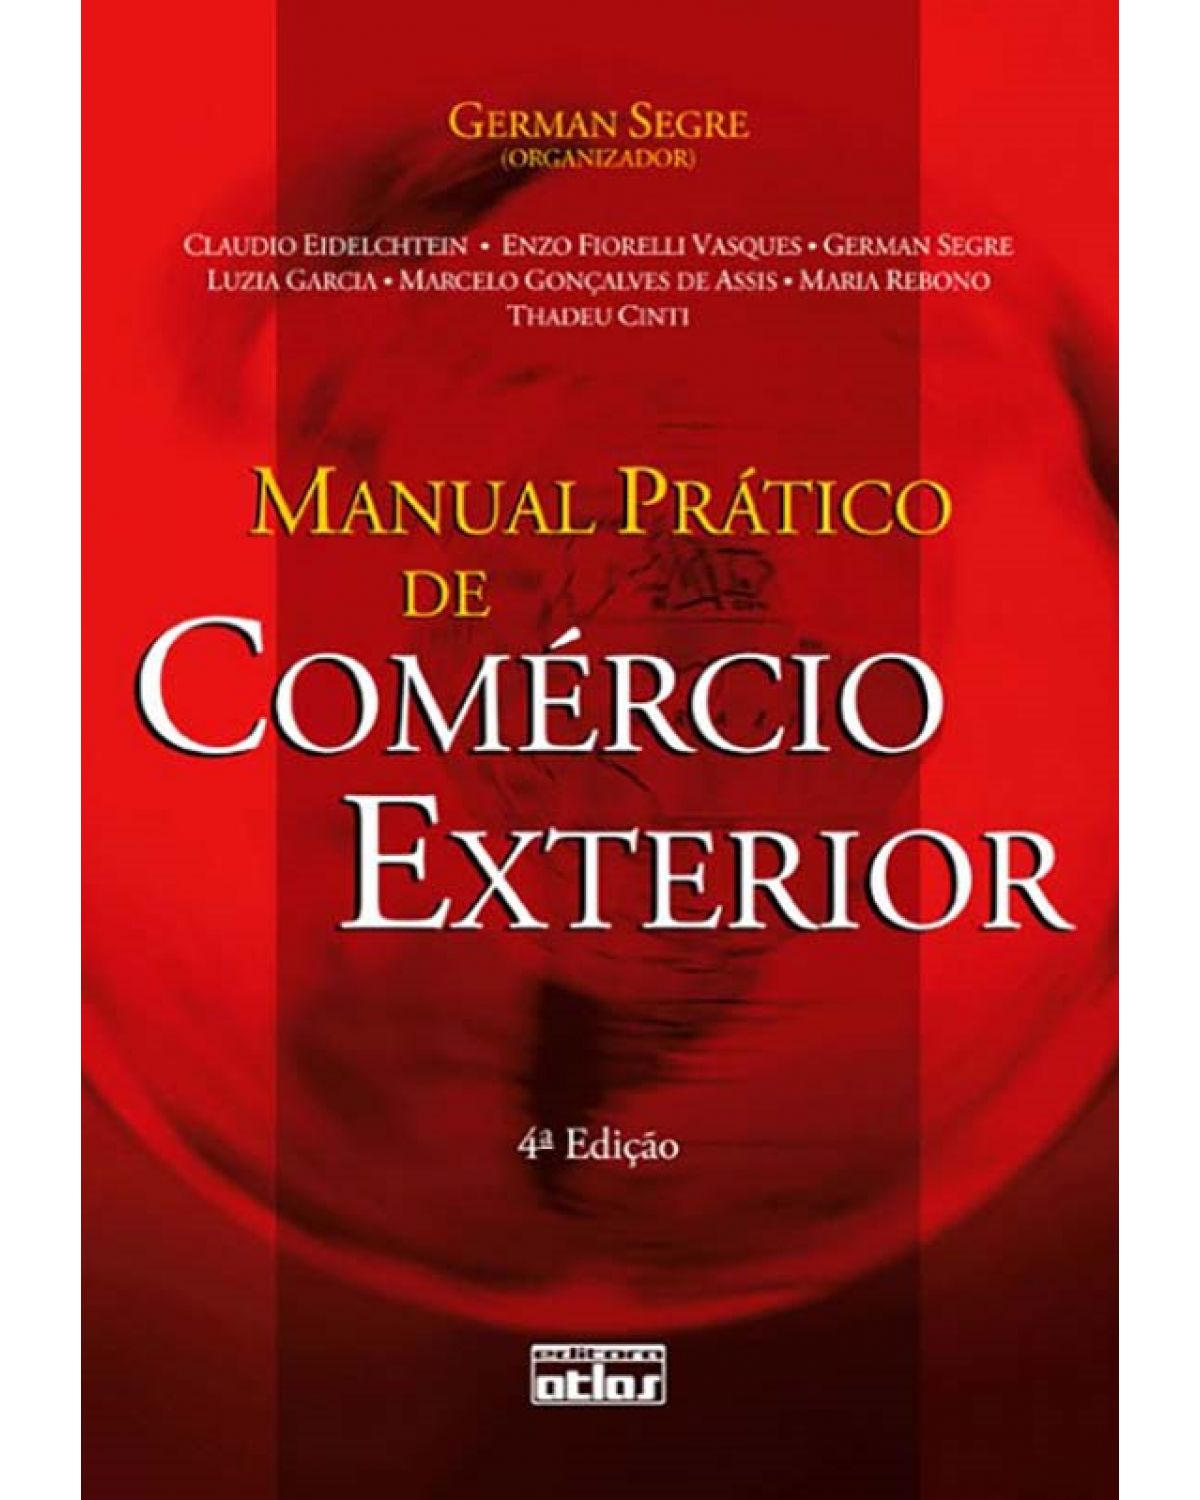 Manual prático de comércio exterior - 4ª Edição | 2012